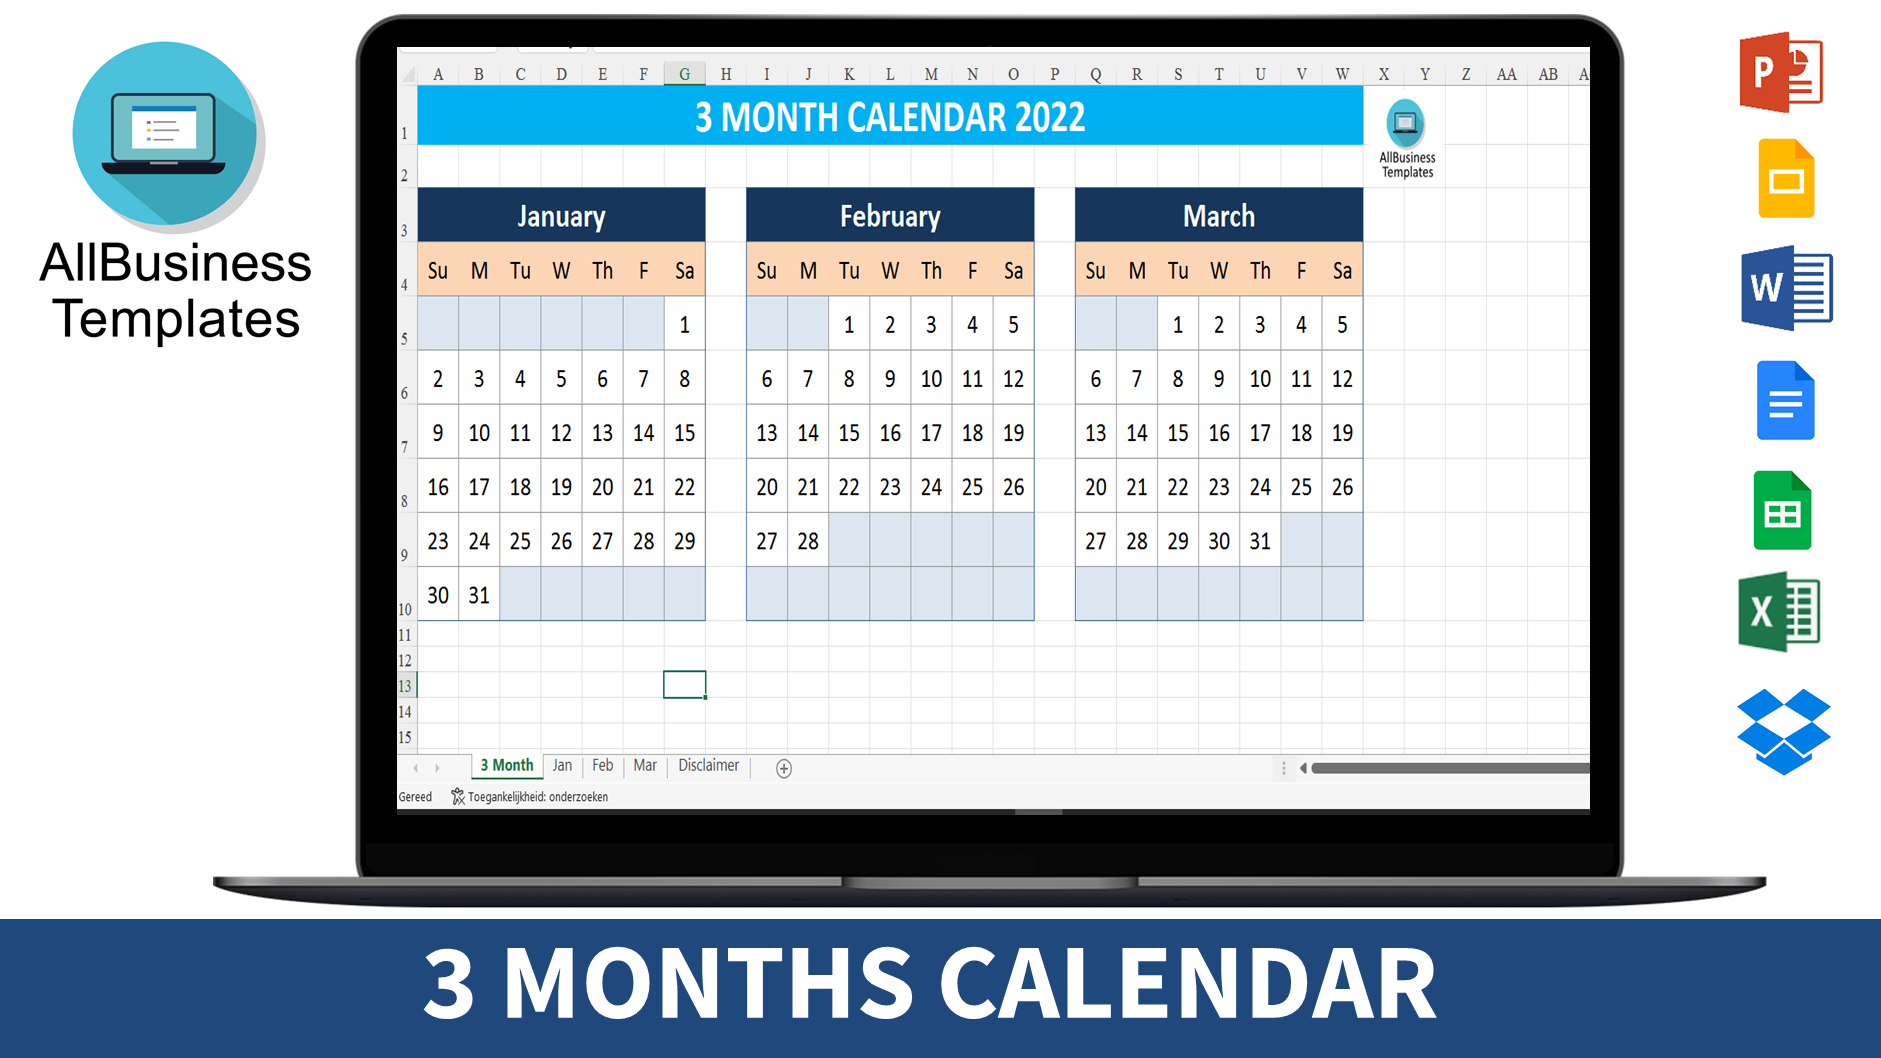 Calendar 2022 (3 Months) main image